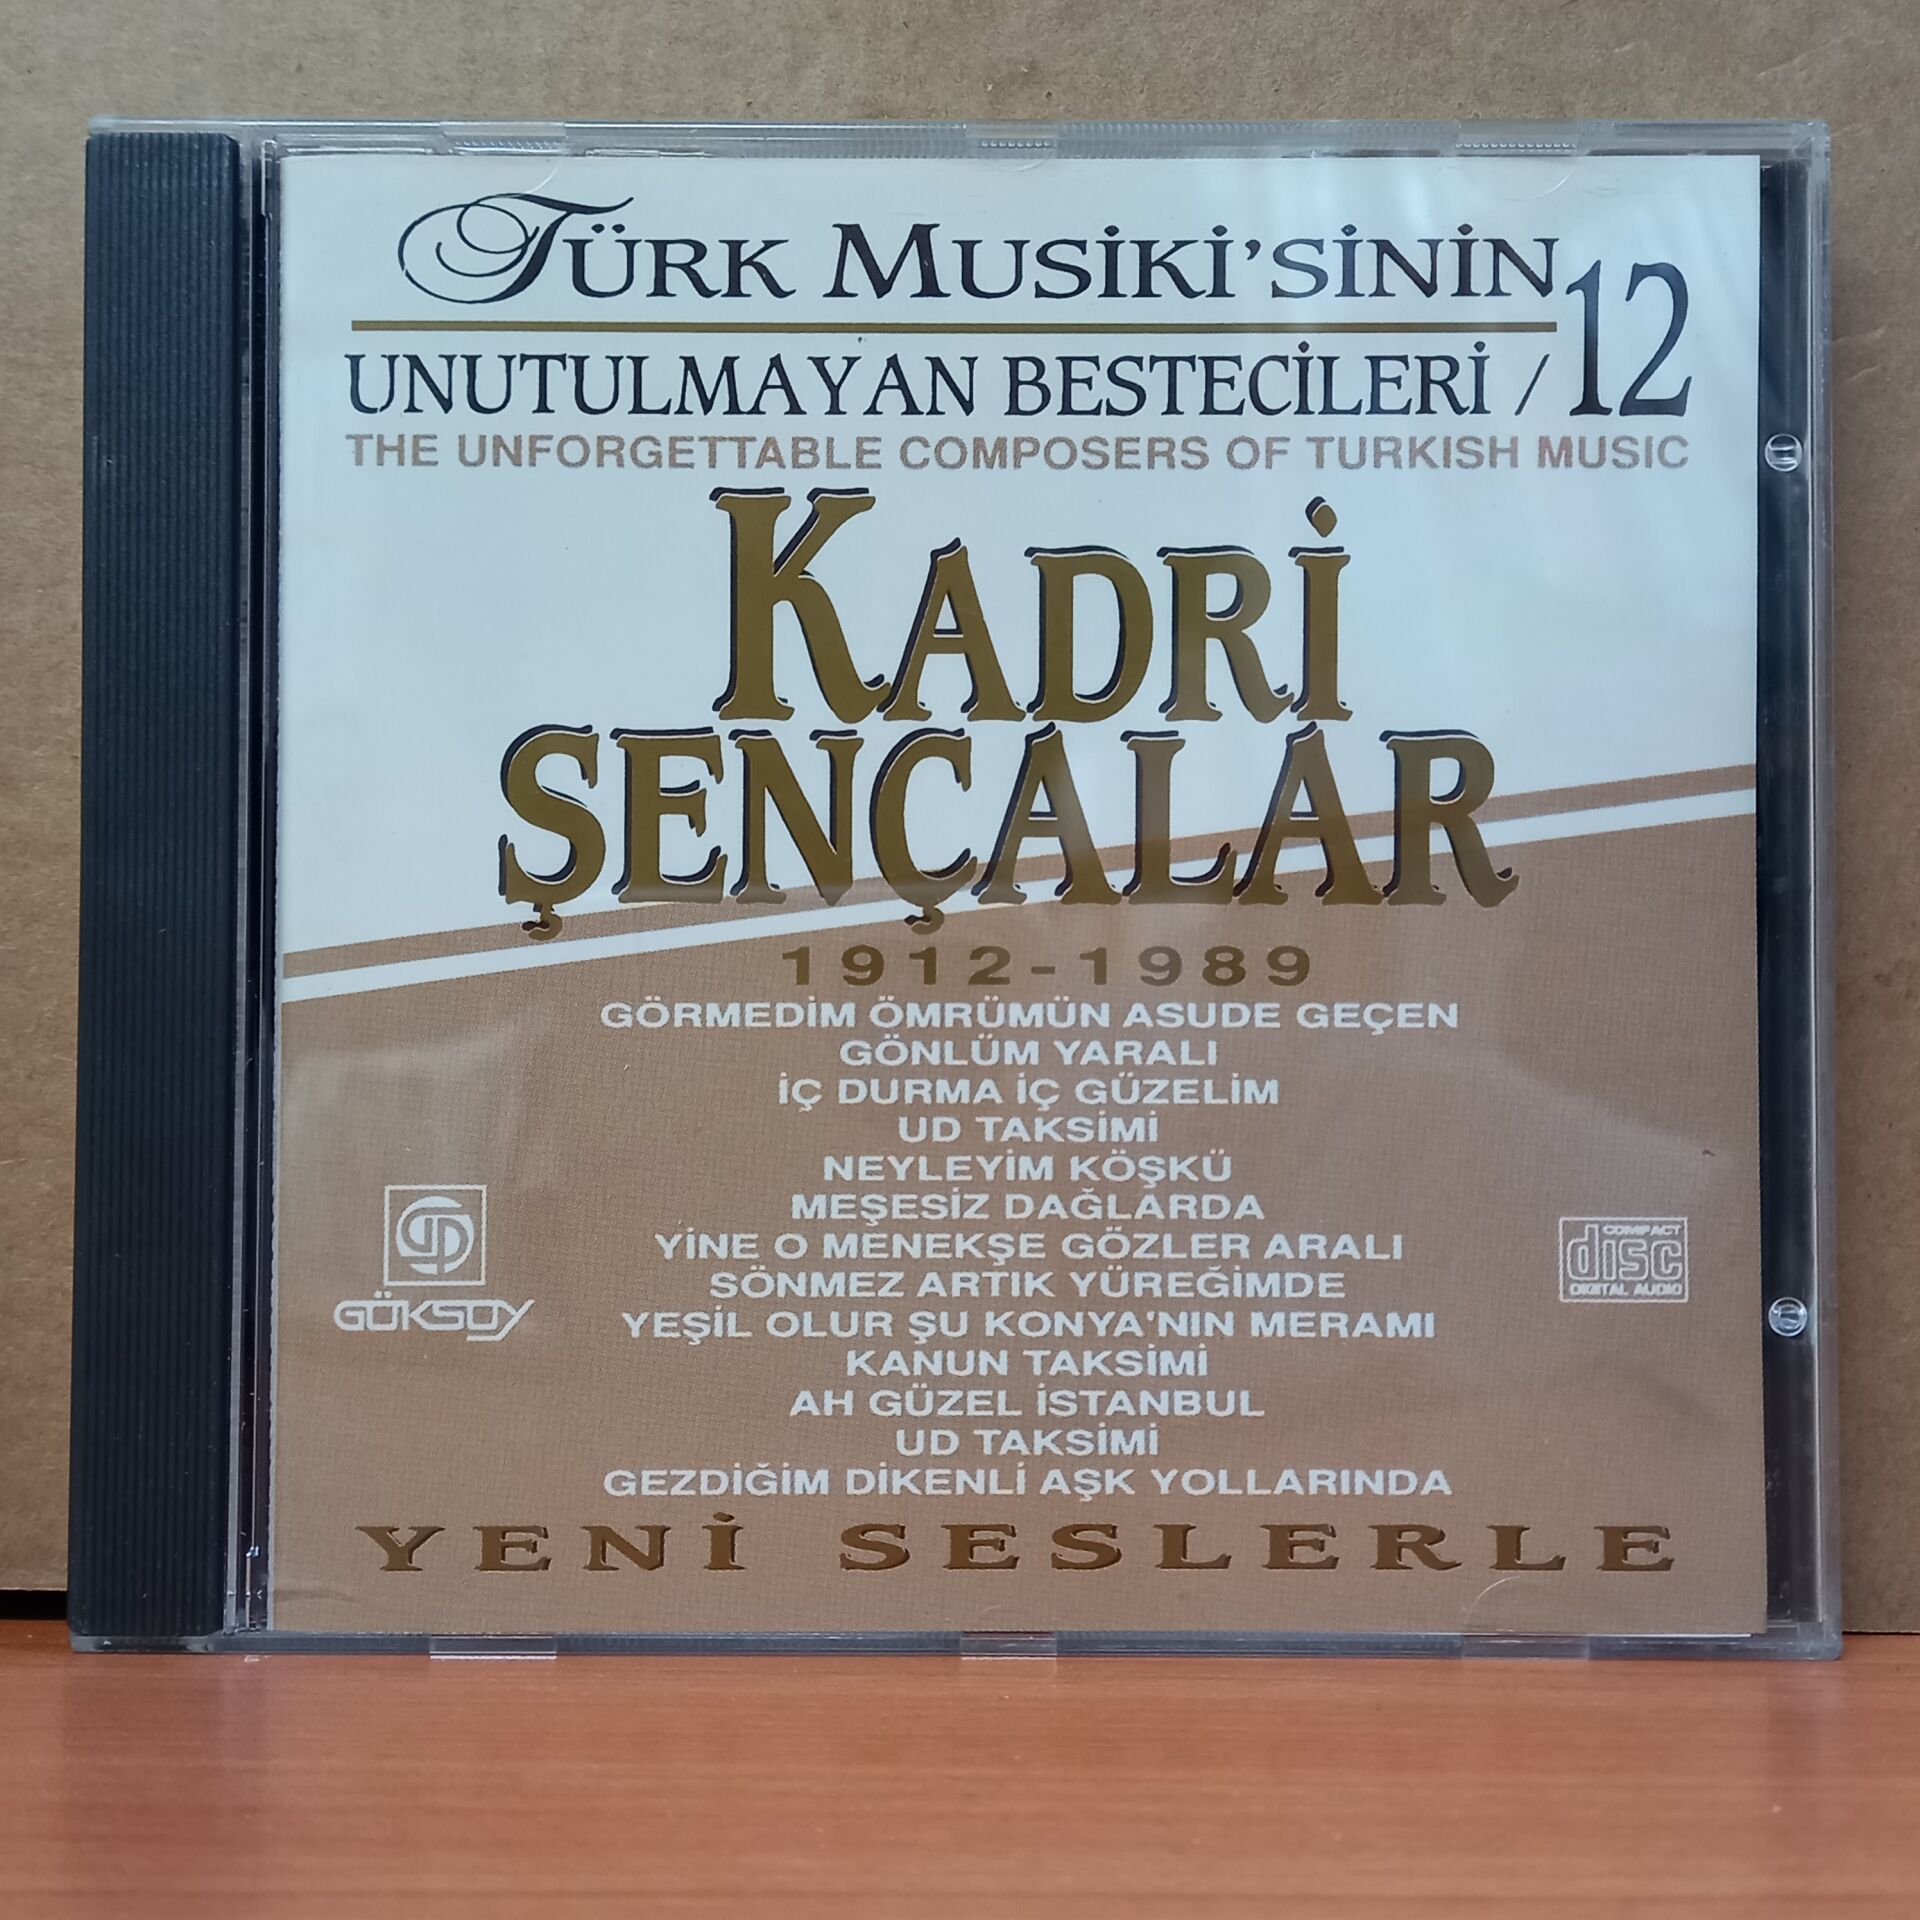 TÜRK MUSİKİ'SİNİN UNUTULMAYAN BESTECİLERİ 12 / KADRİ ŞENÇALAR (1994) - CD 2.EL